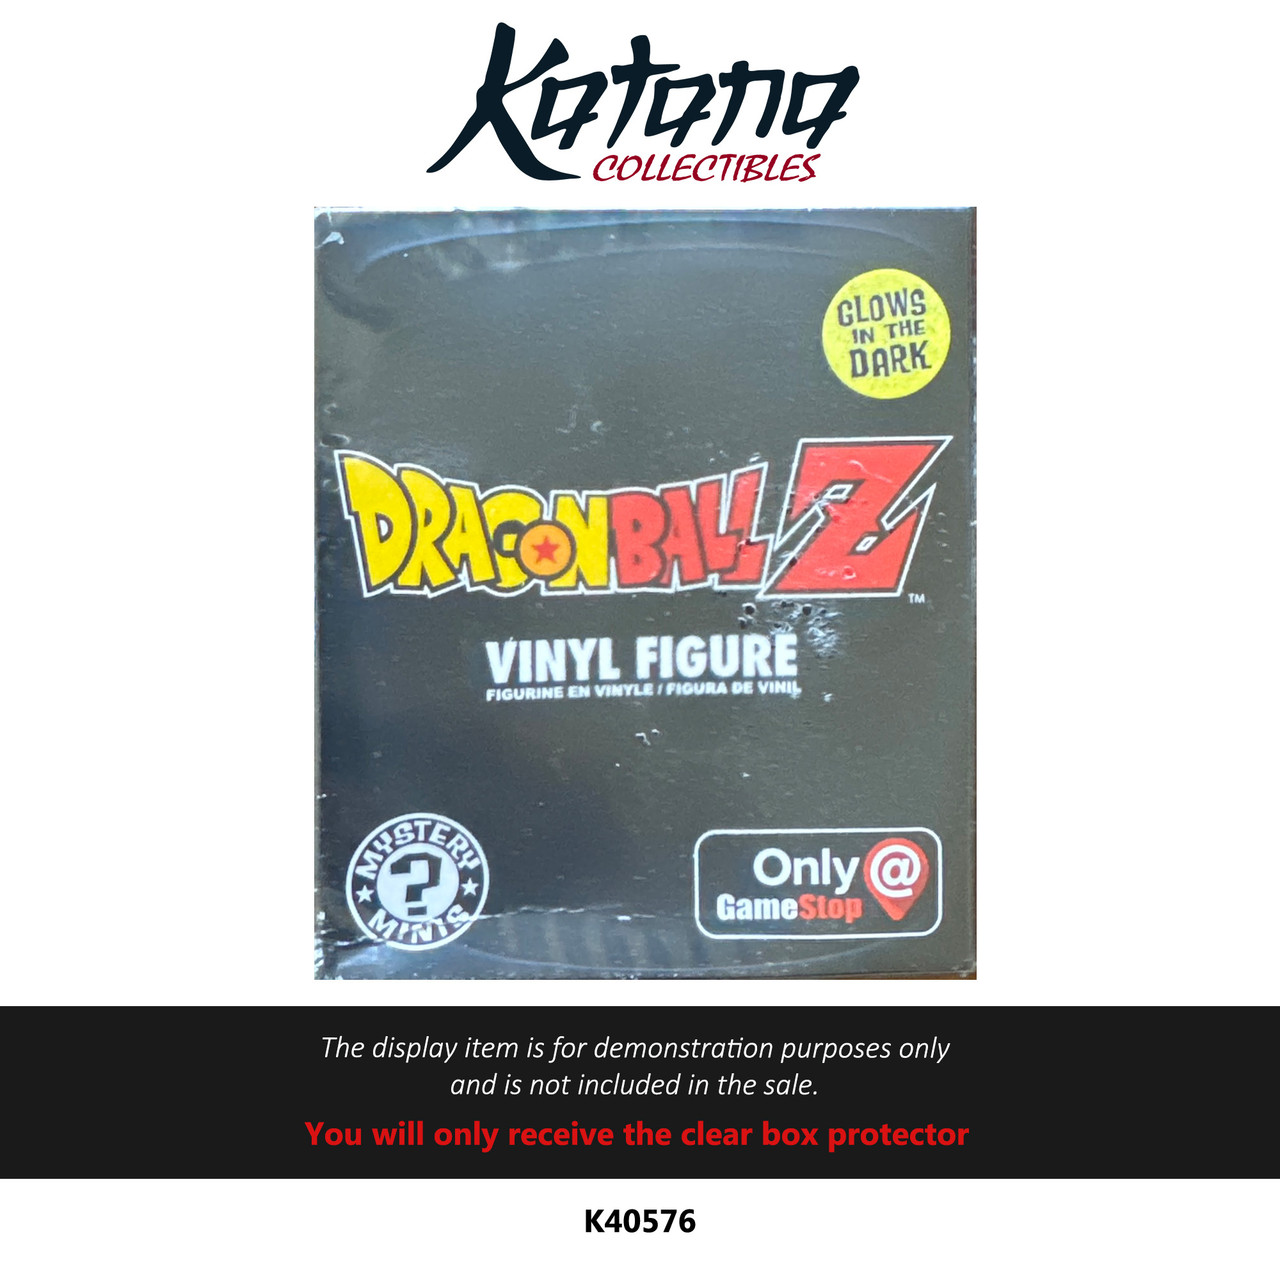 Katana Collectibles Protector For Dragon Ball Z Vinyl Figure Gamestop Exclusivr